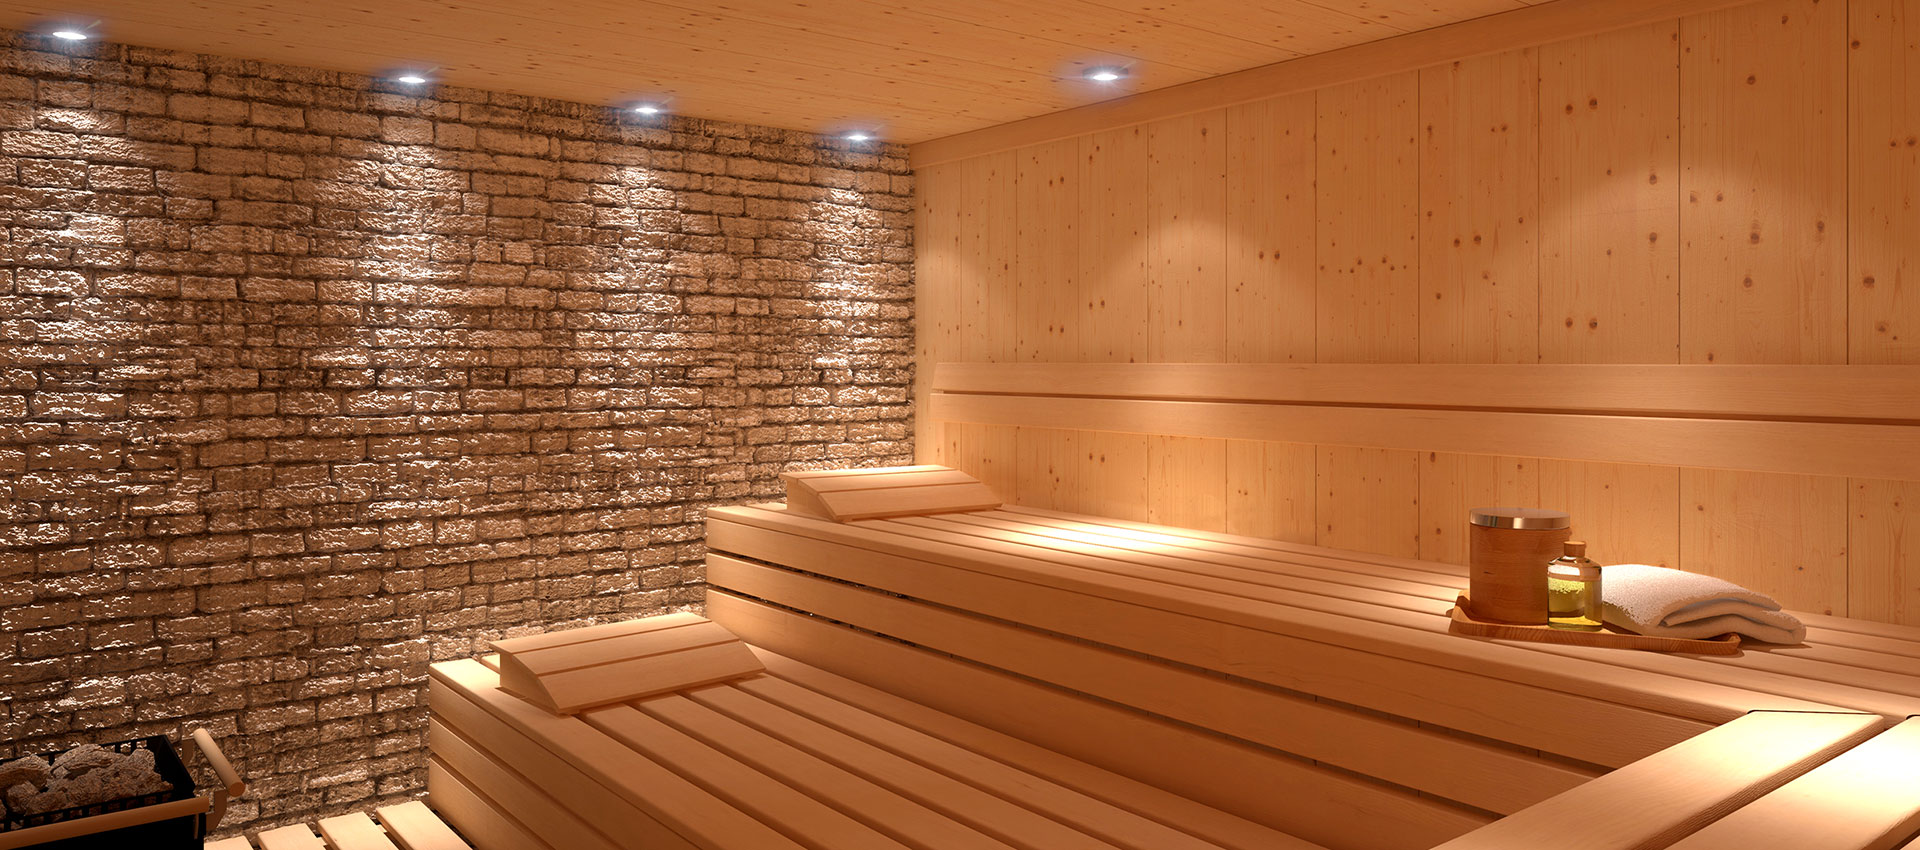 italian-wellness-realizzazione-centro-benessere-sauna